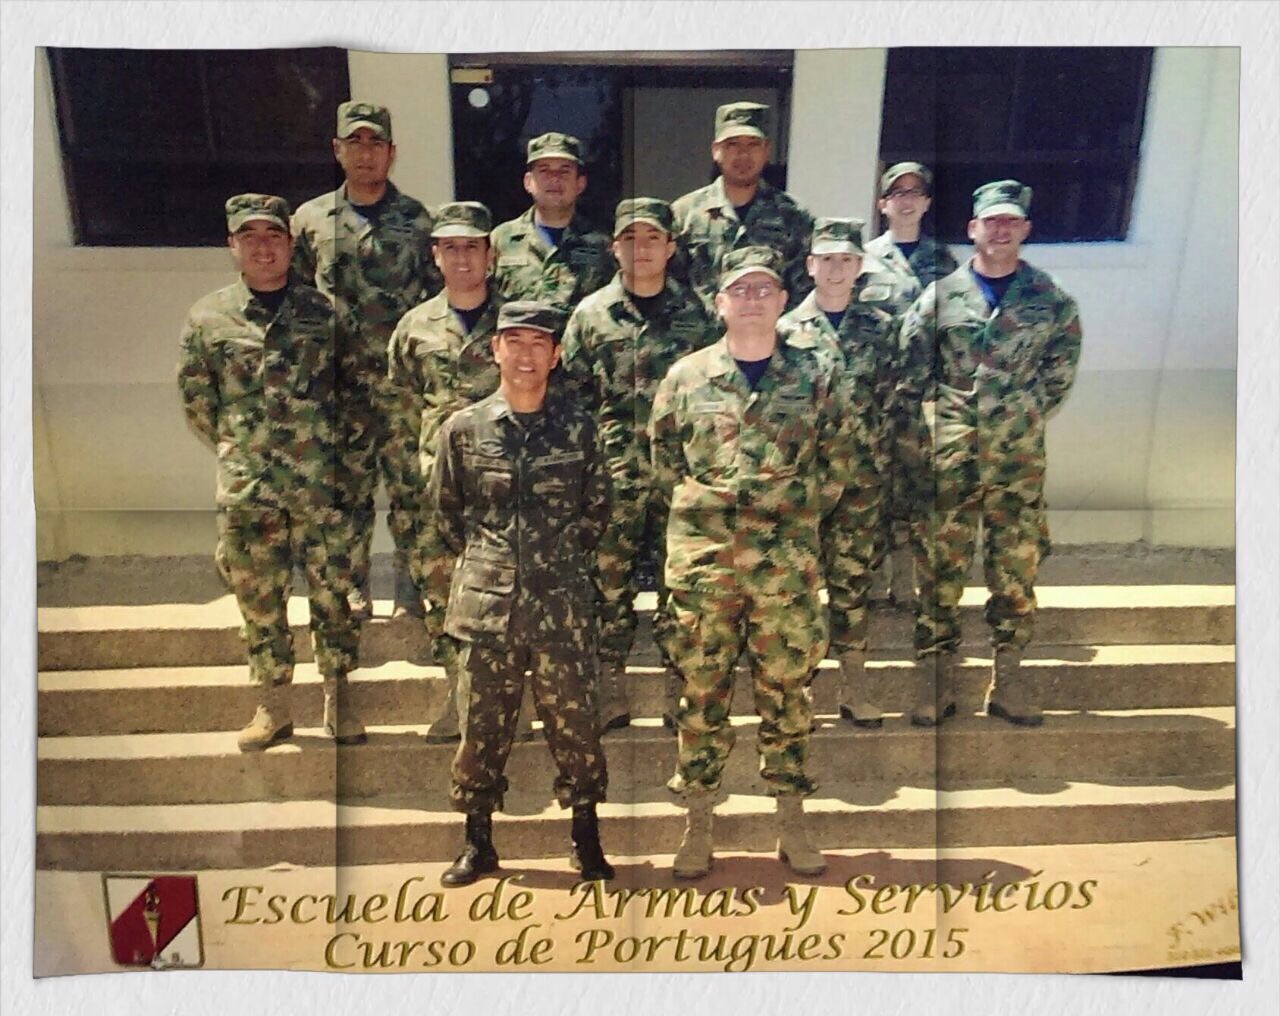 Curso de Portugués 2015, Escuela de Armas y Servicios - Bogotá, Febrero 18 de 2015